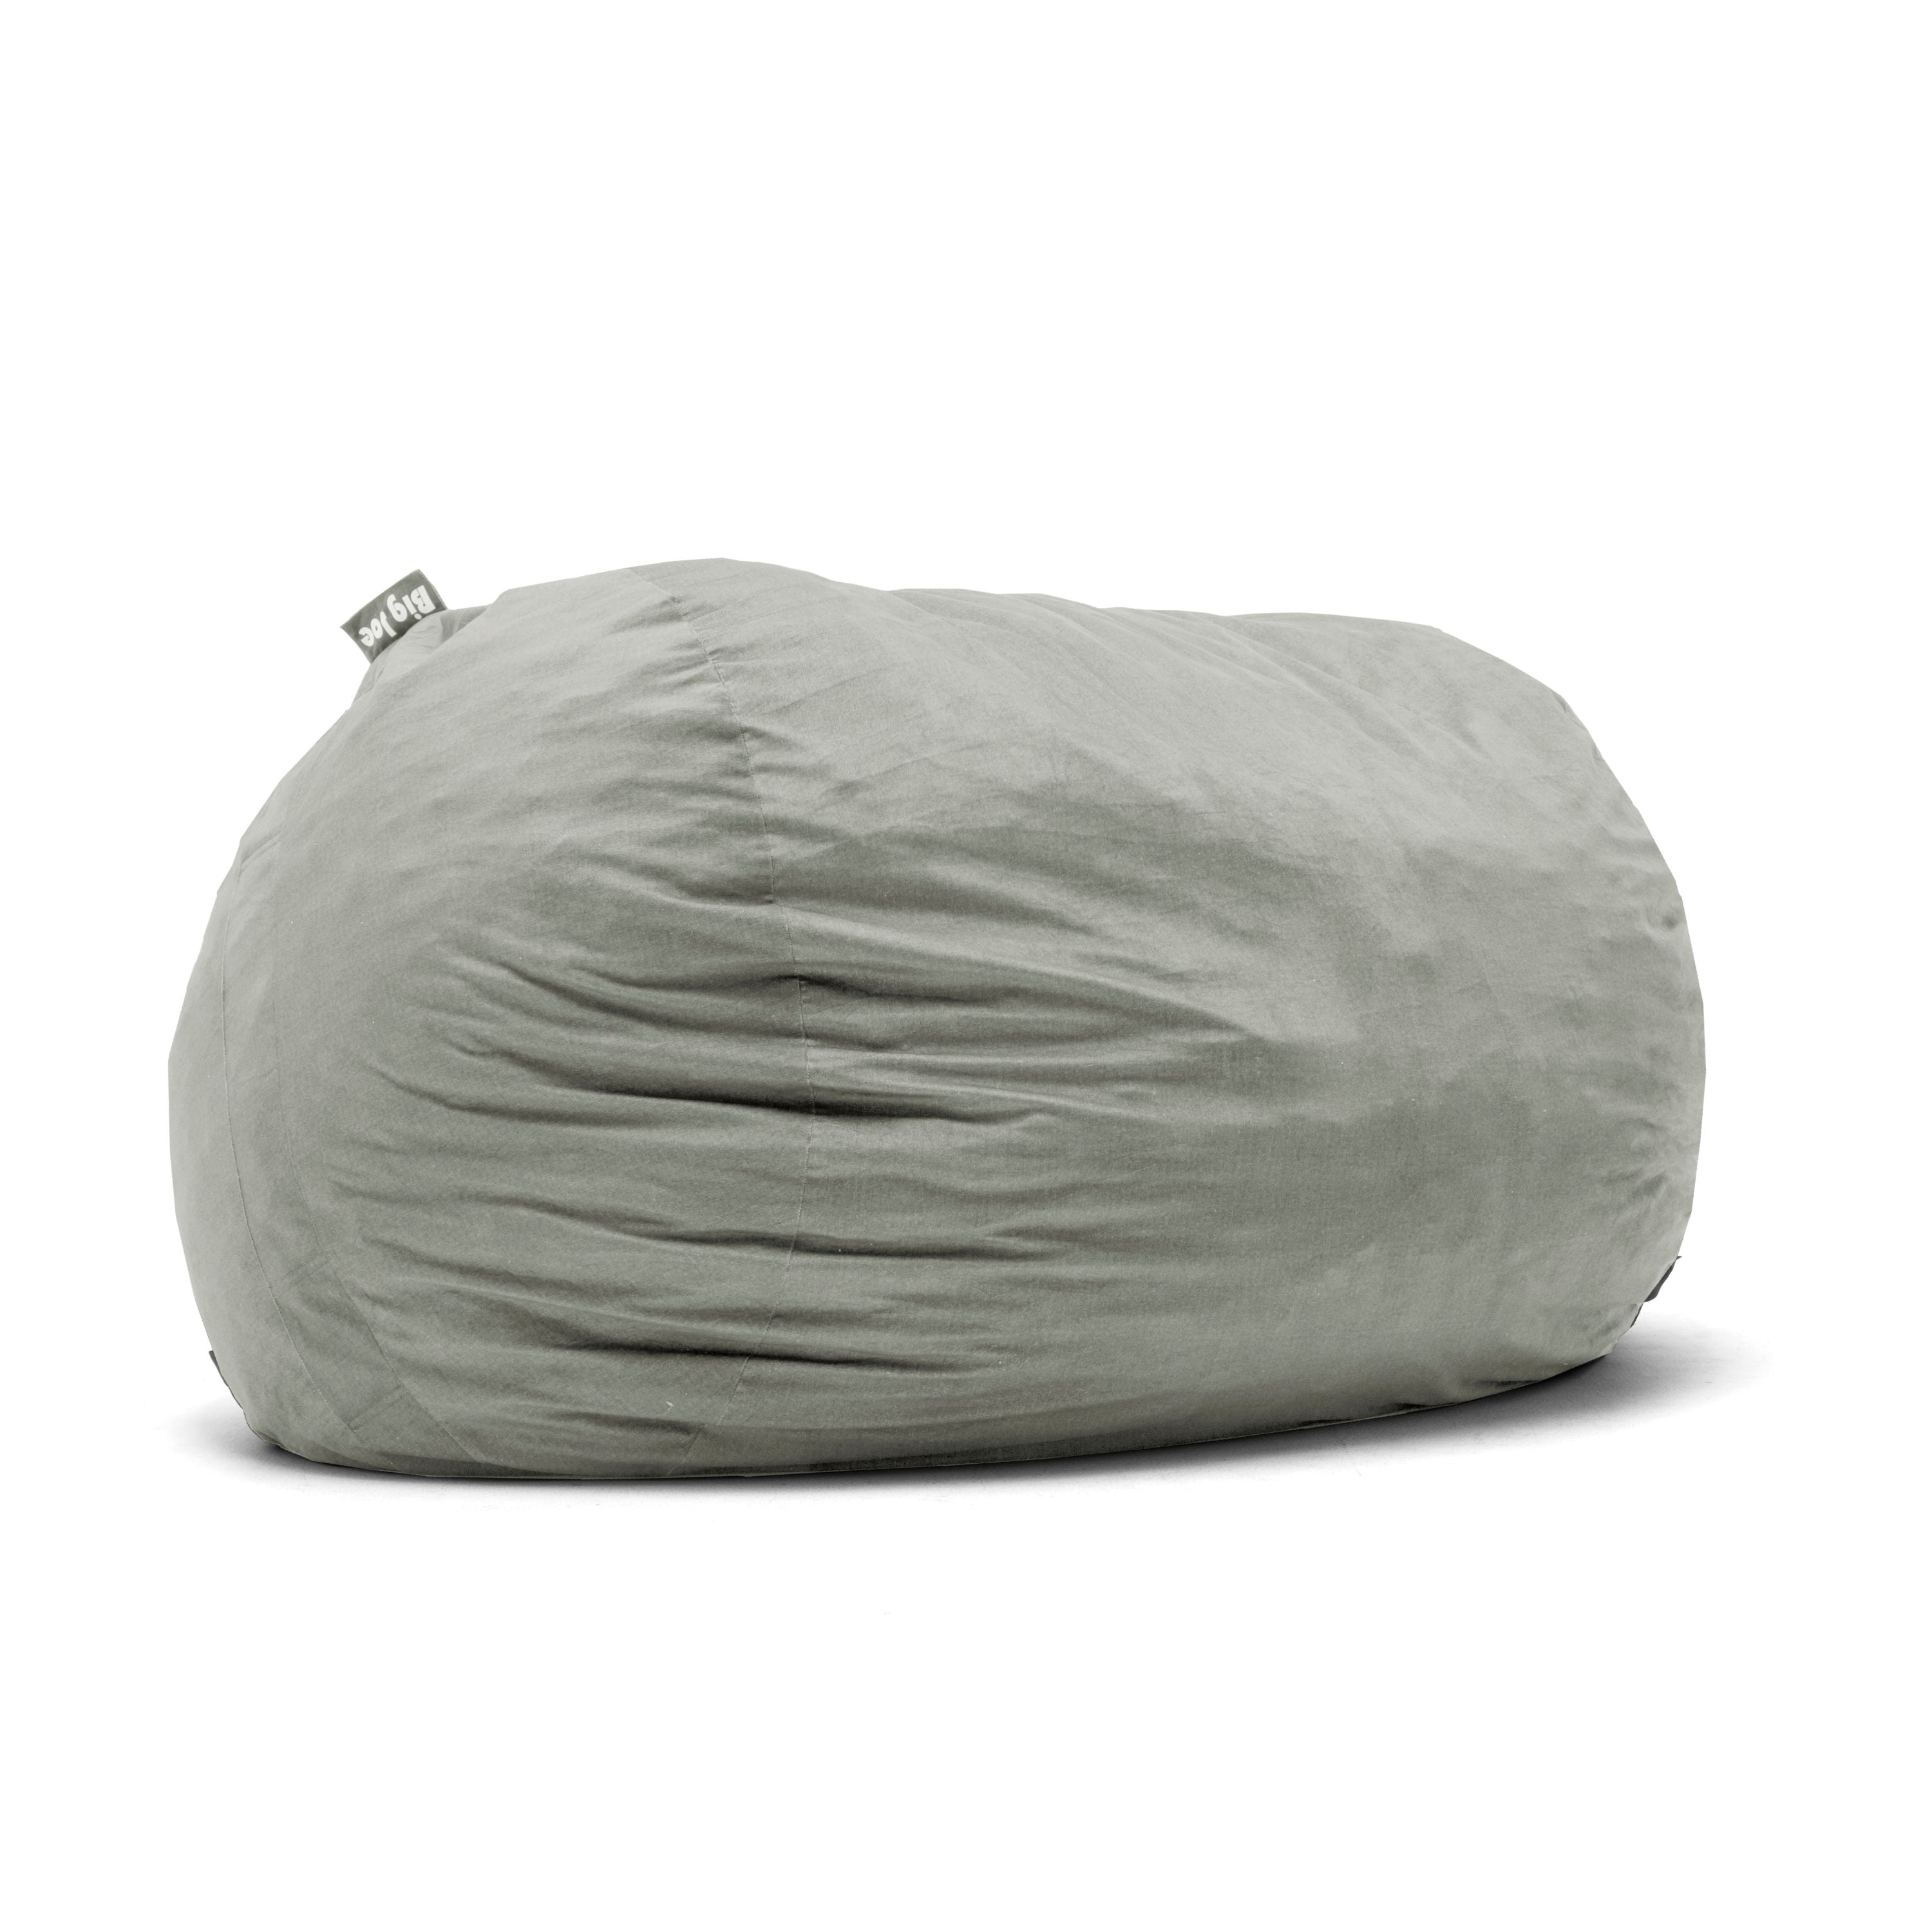 How to Clean a Big Joe Bean Bag?